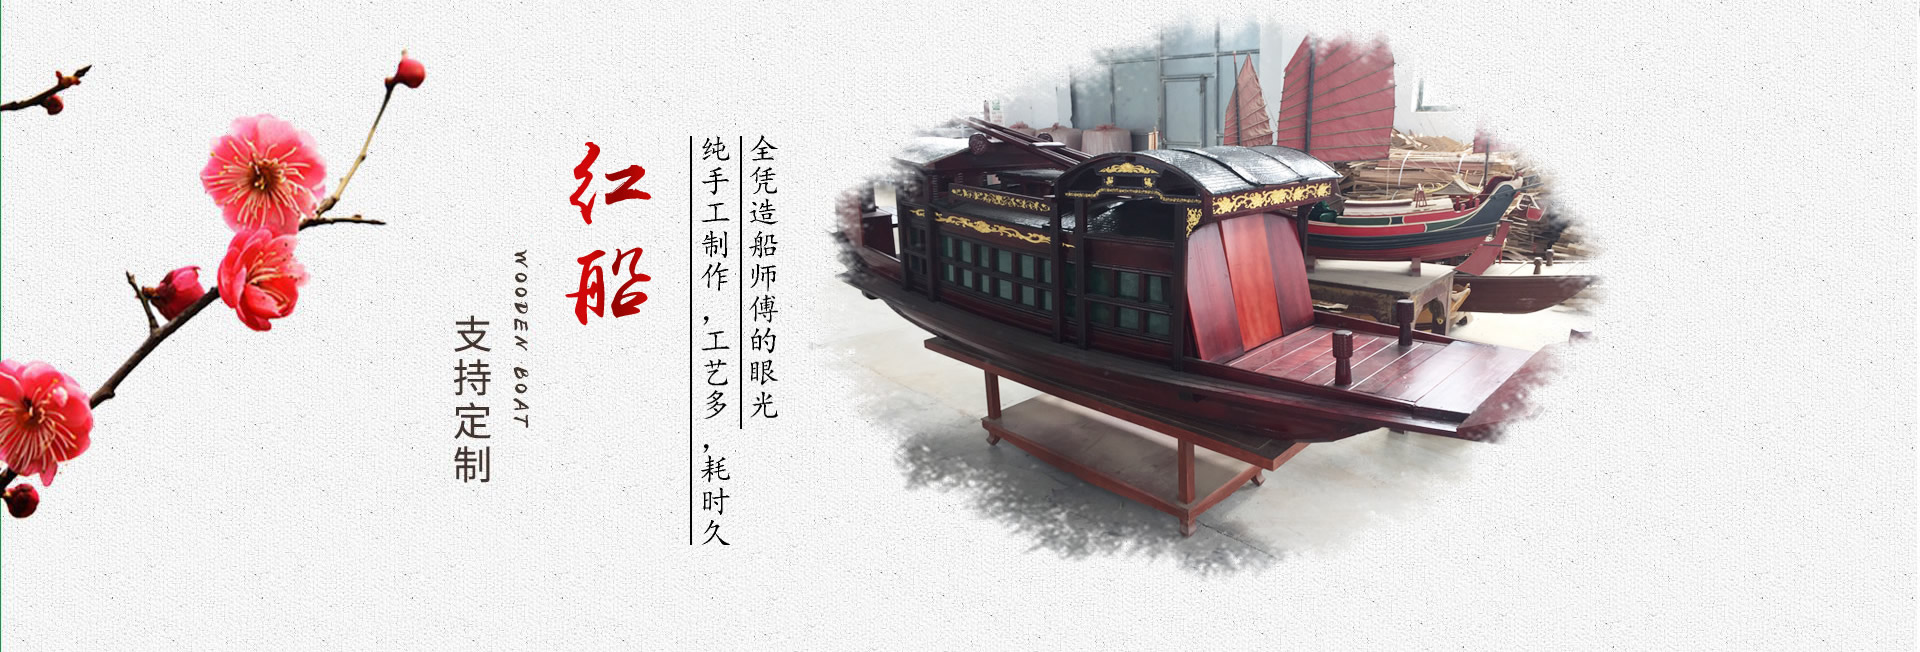 木船,画舫船,玻璃钢船,仿古木船,欧式木船,龙舟,贡多拉_兴化市古镇木船 